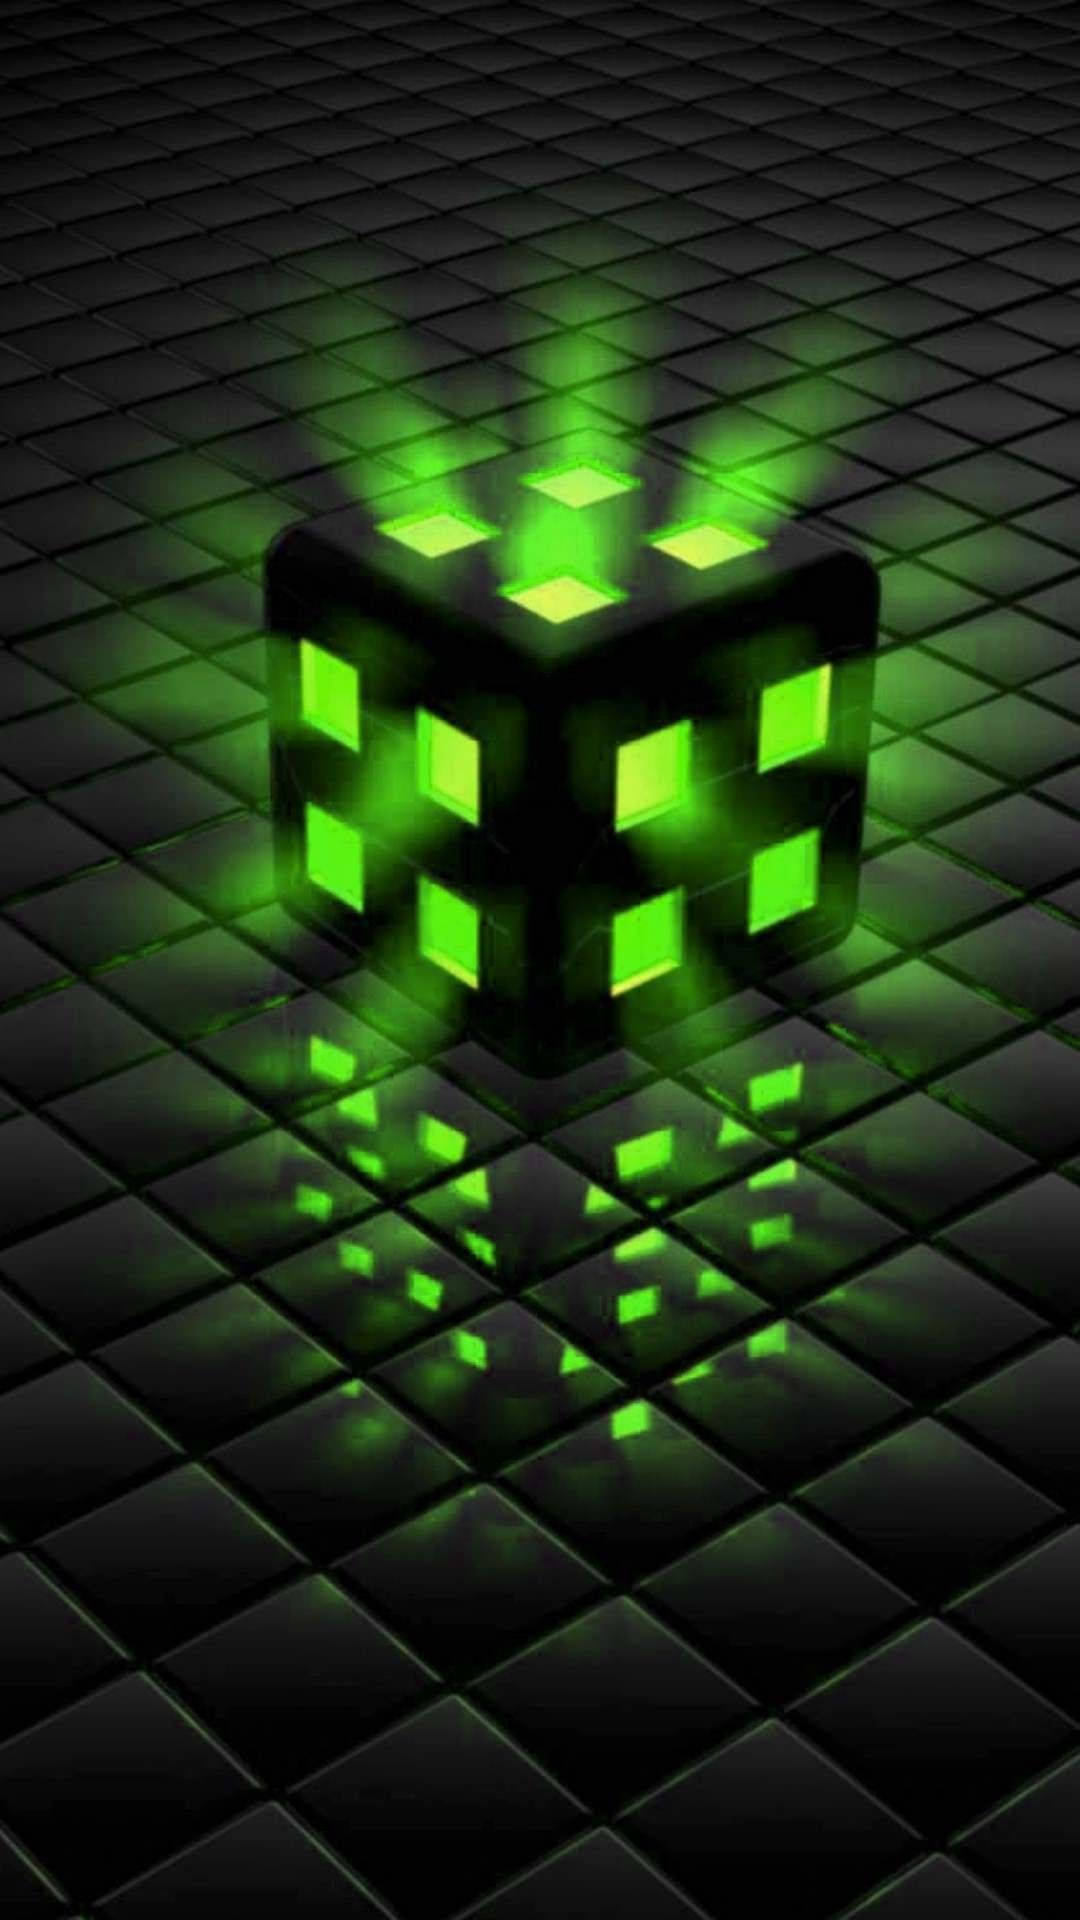 Caption: Illuminated Green Rubik's Cube Background